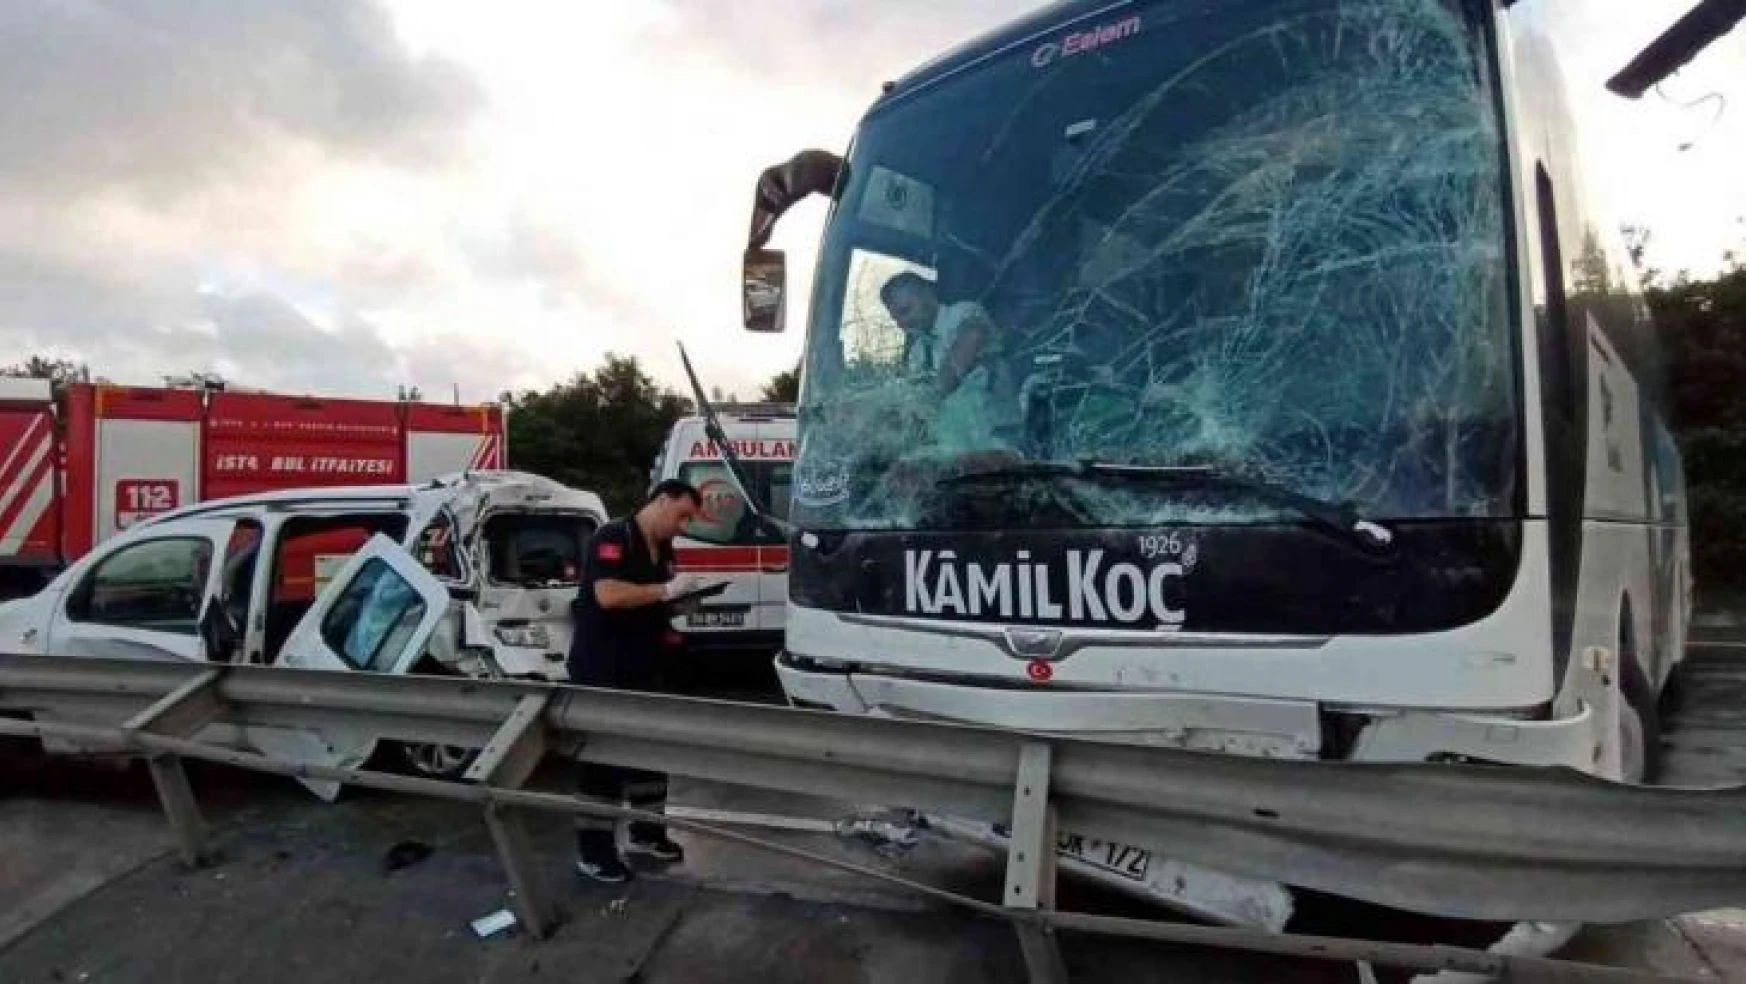 İstanbul, Hasdal-Kemerburgaz istikametinde yolcu otobüsüyle birlikte 7 aracın karıştığı zincirleme trafik kazası meydana geldi. Kazada 5 kişi yaralanırken, 1 kişi uzun uğraşlar sonucu sıkıştığı yerden çıkarıldı. Kazayla ilgili çalışmalar sürüyor.